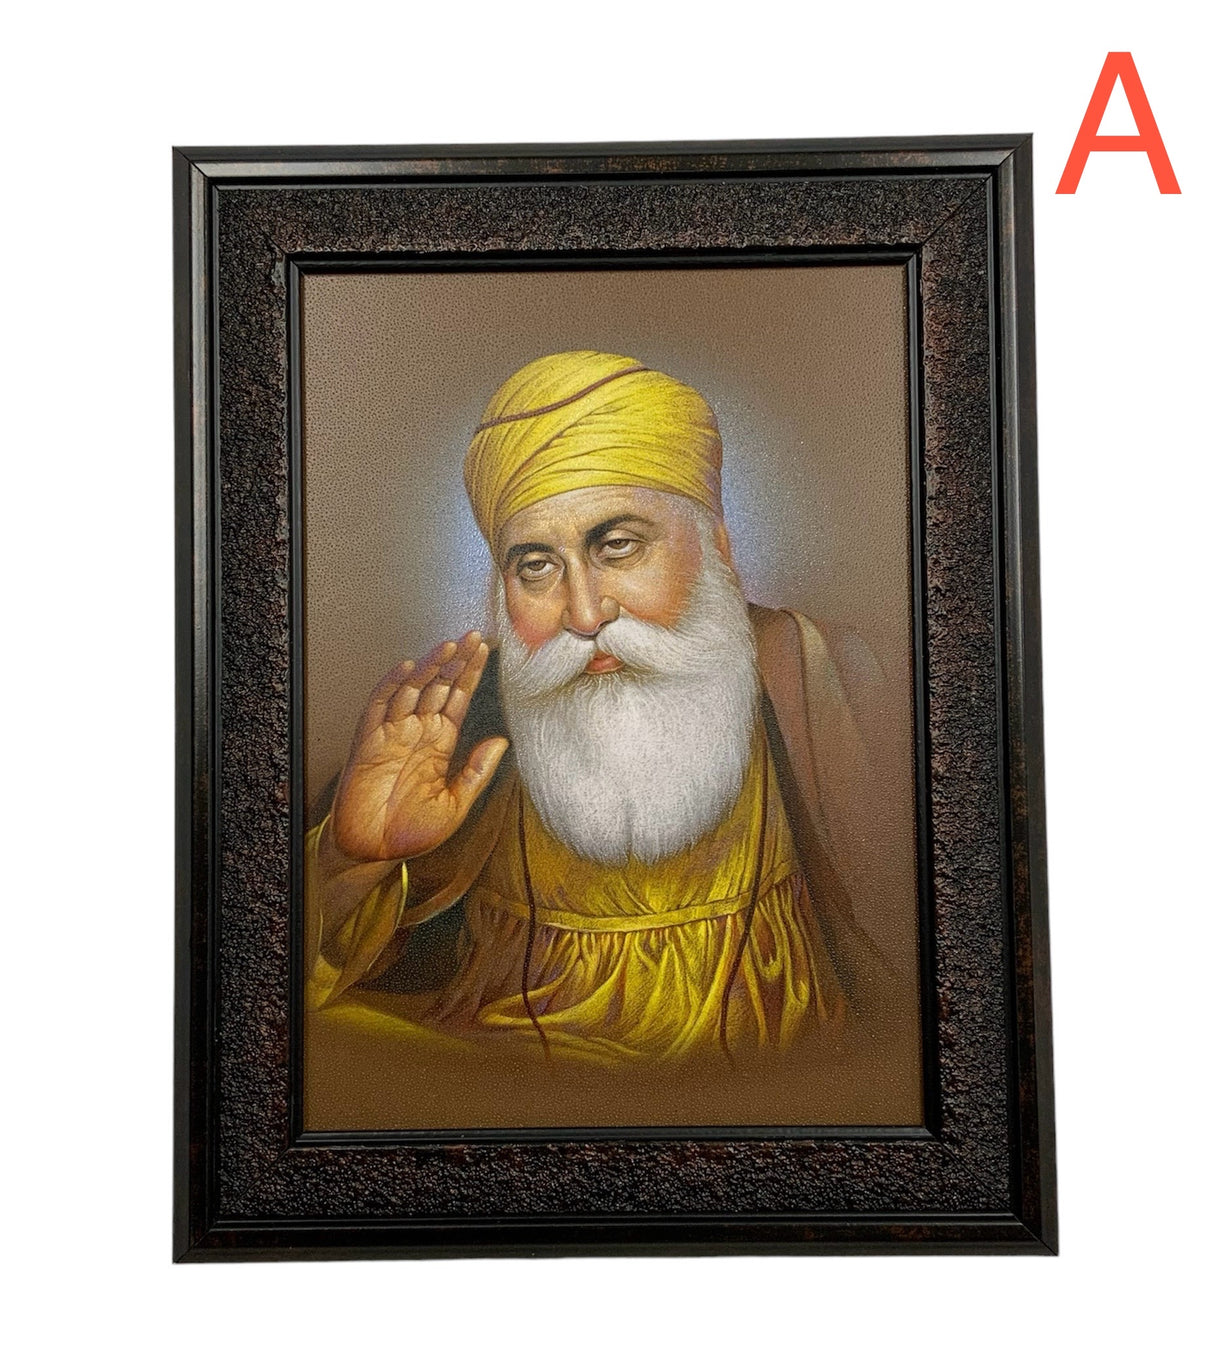 Guru Nanak Dev Ji Photo Frame 7X9 inches with Stand